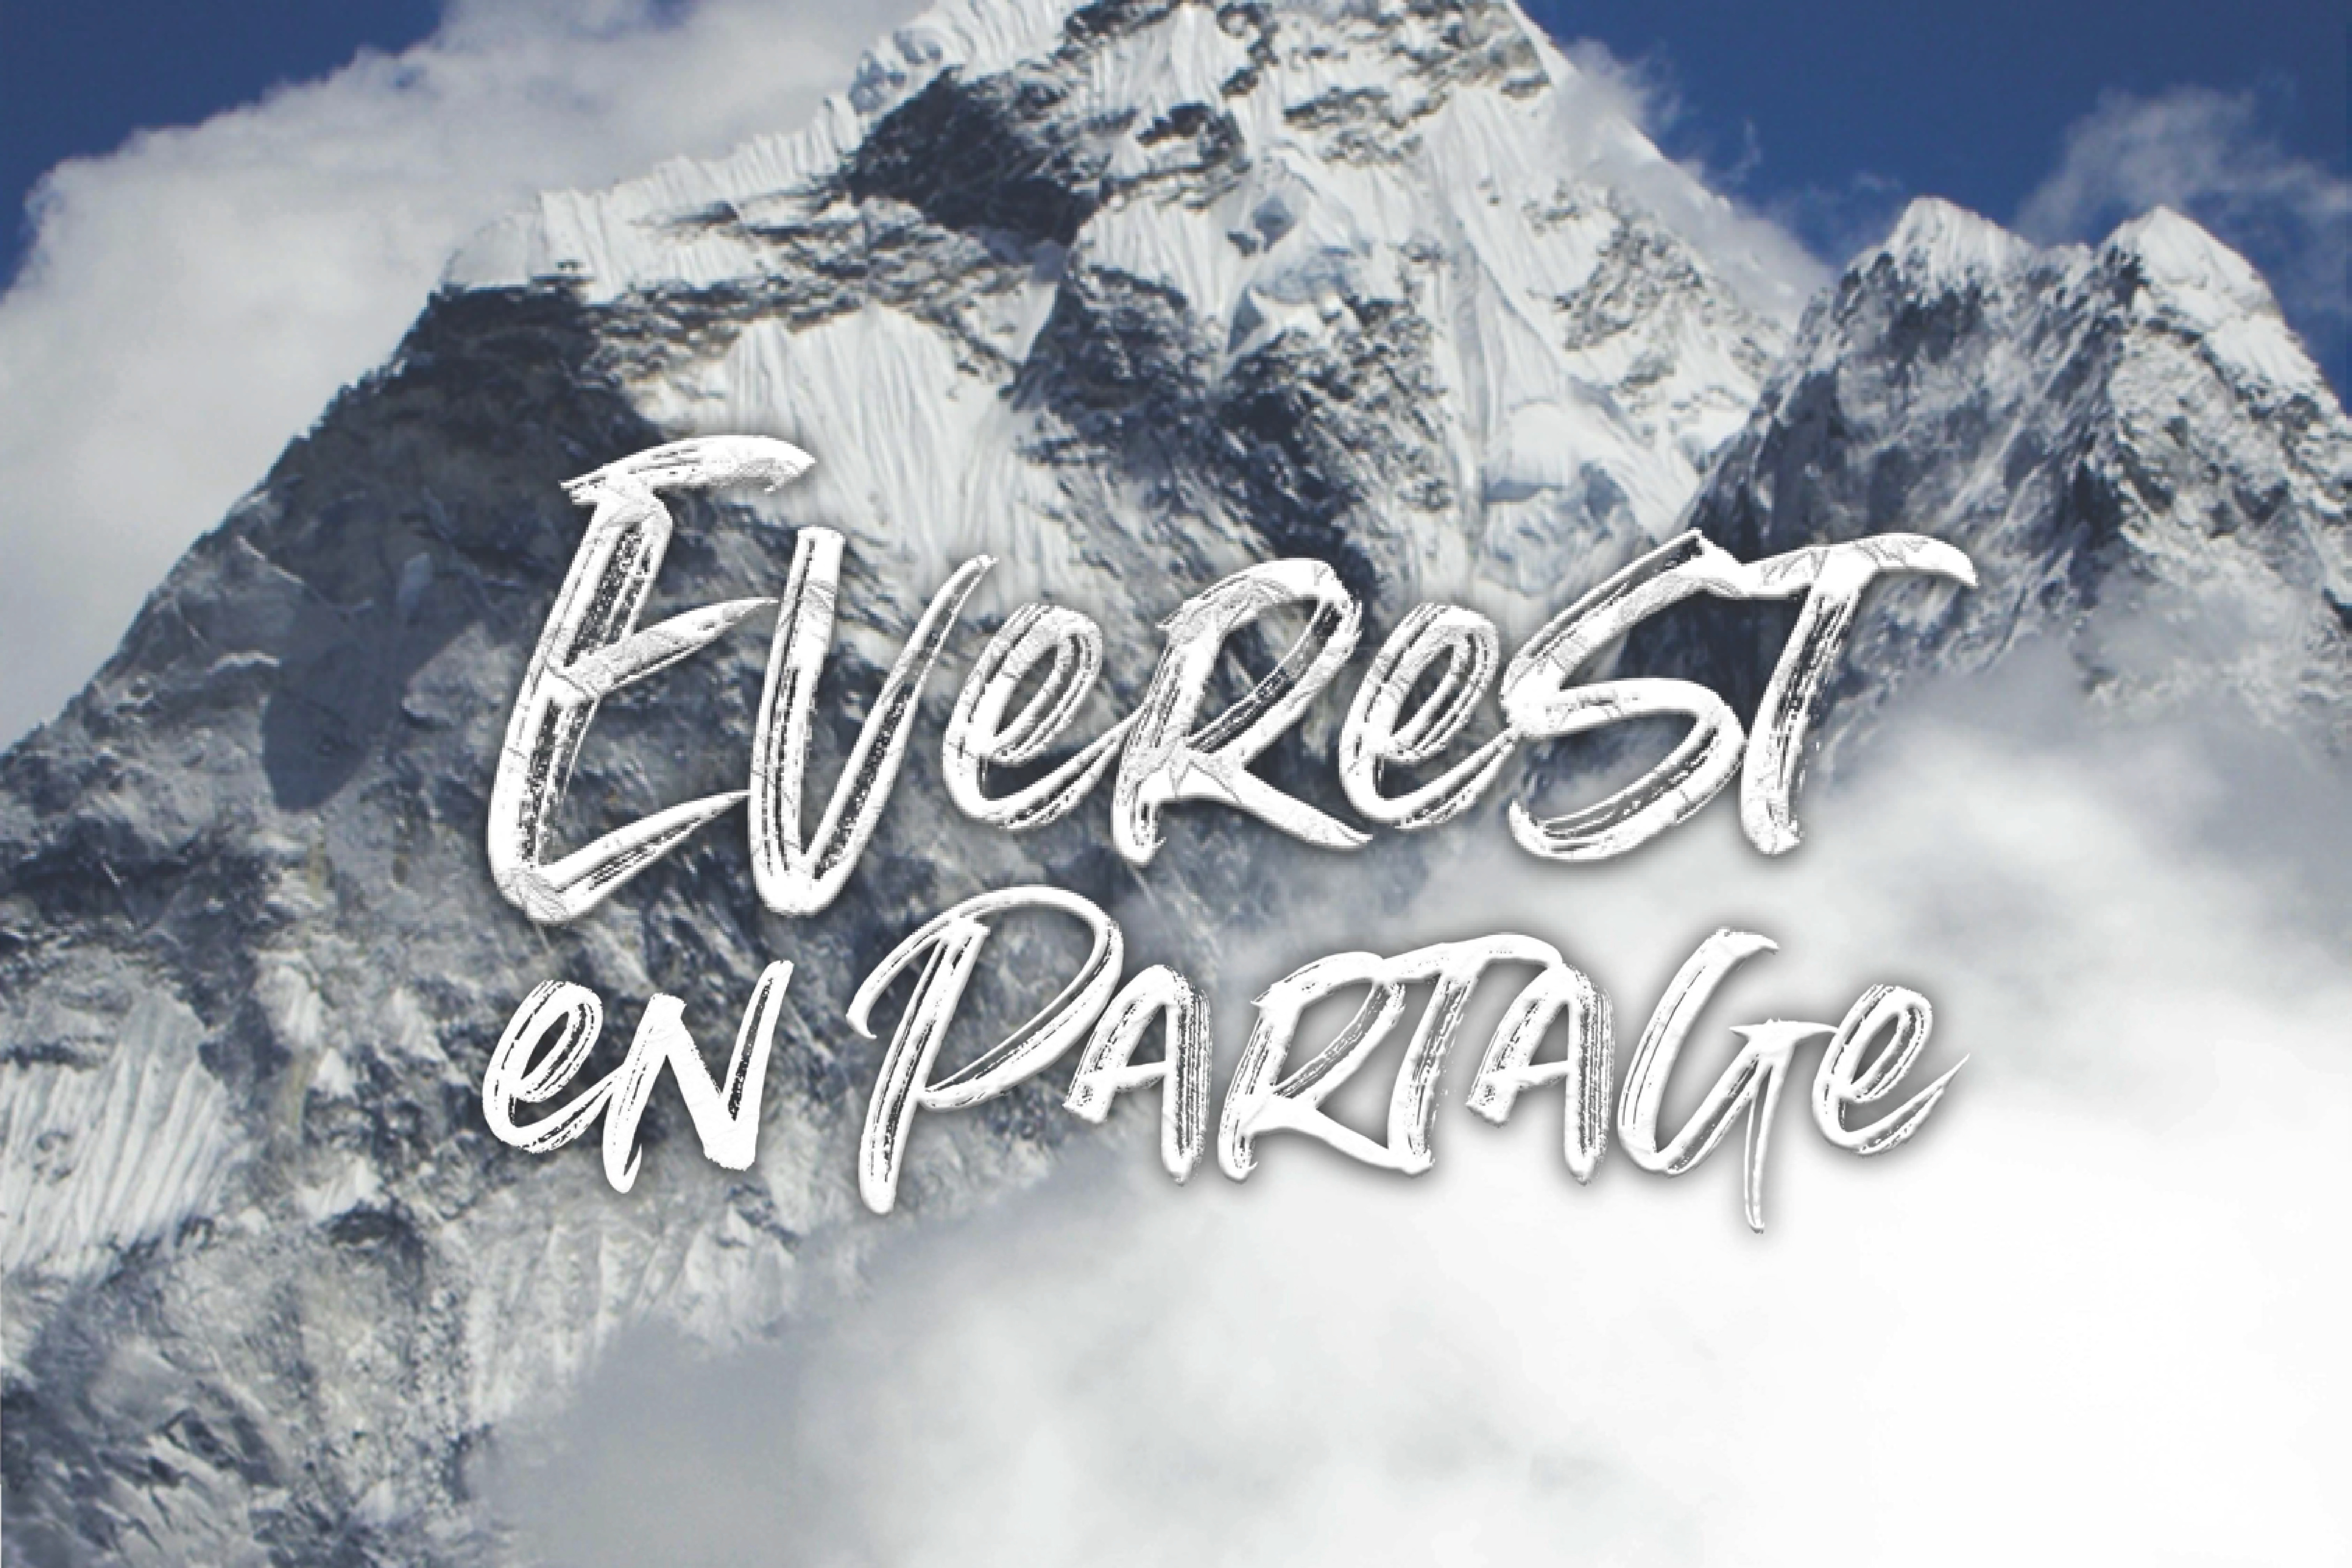 Lire la suite à propos de l’article Avant Première – Everest en Partage